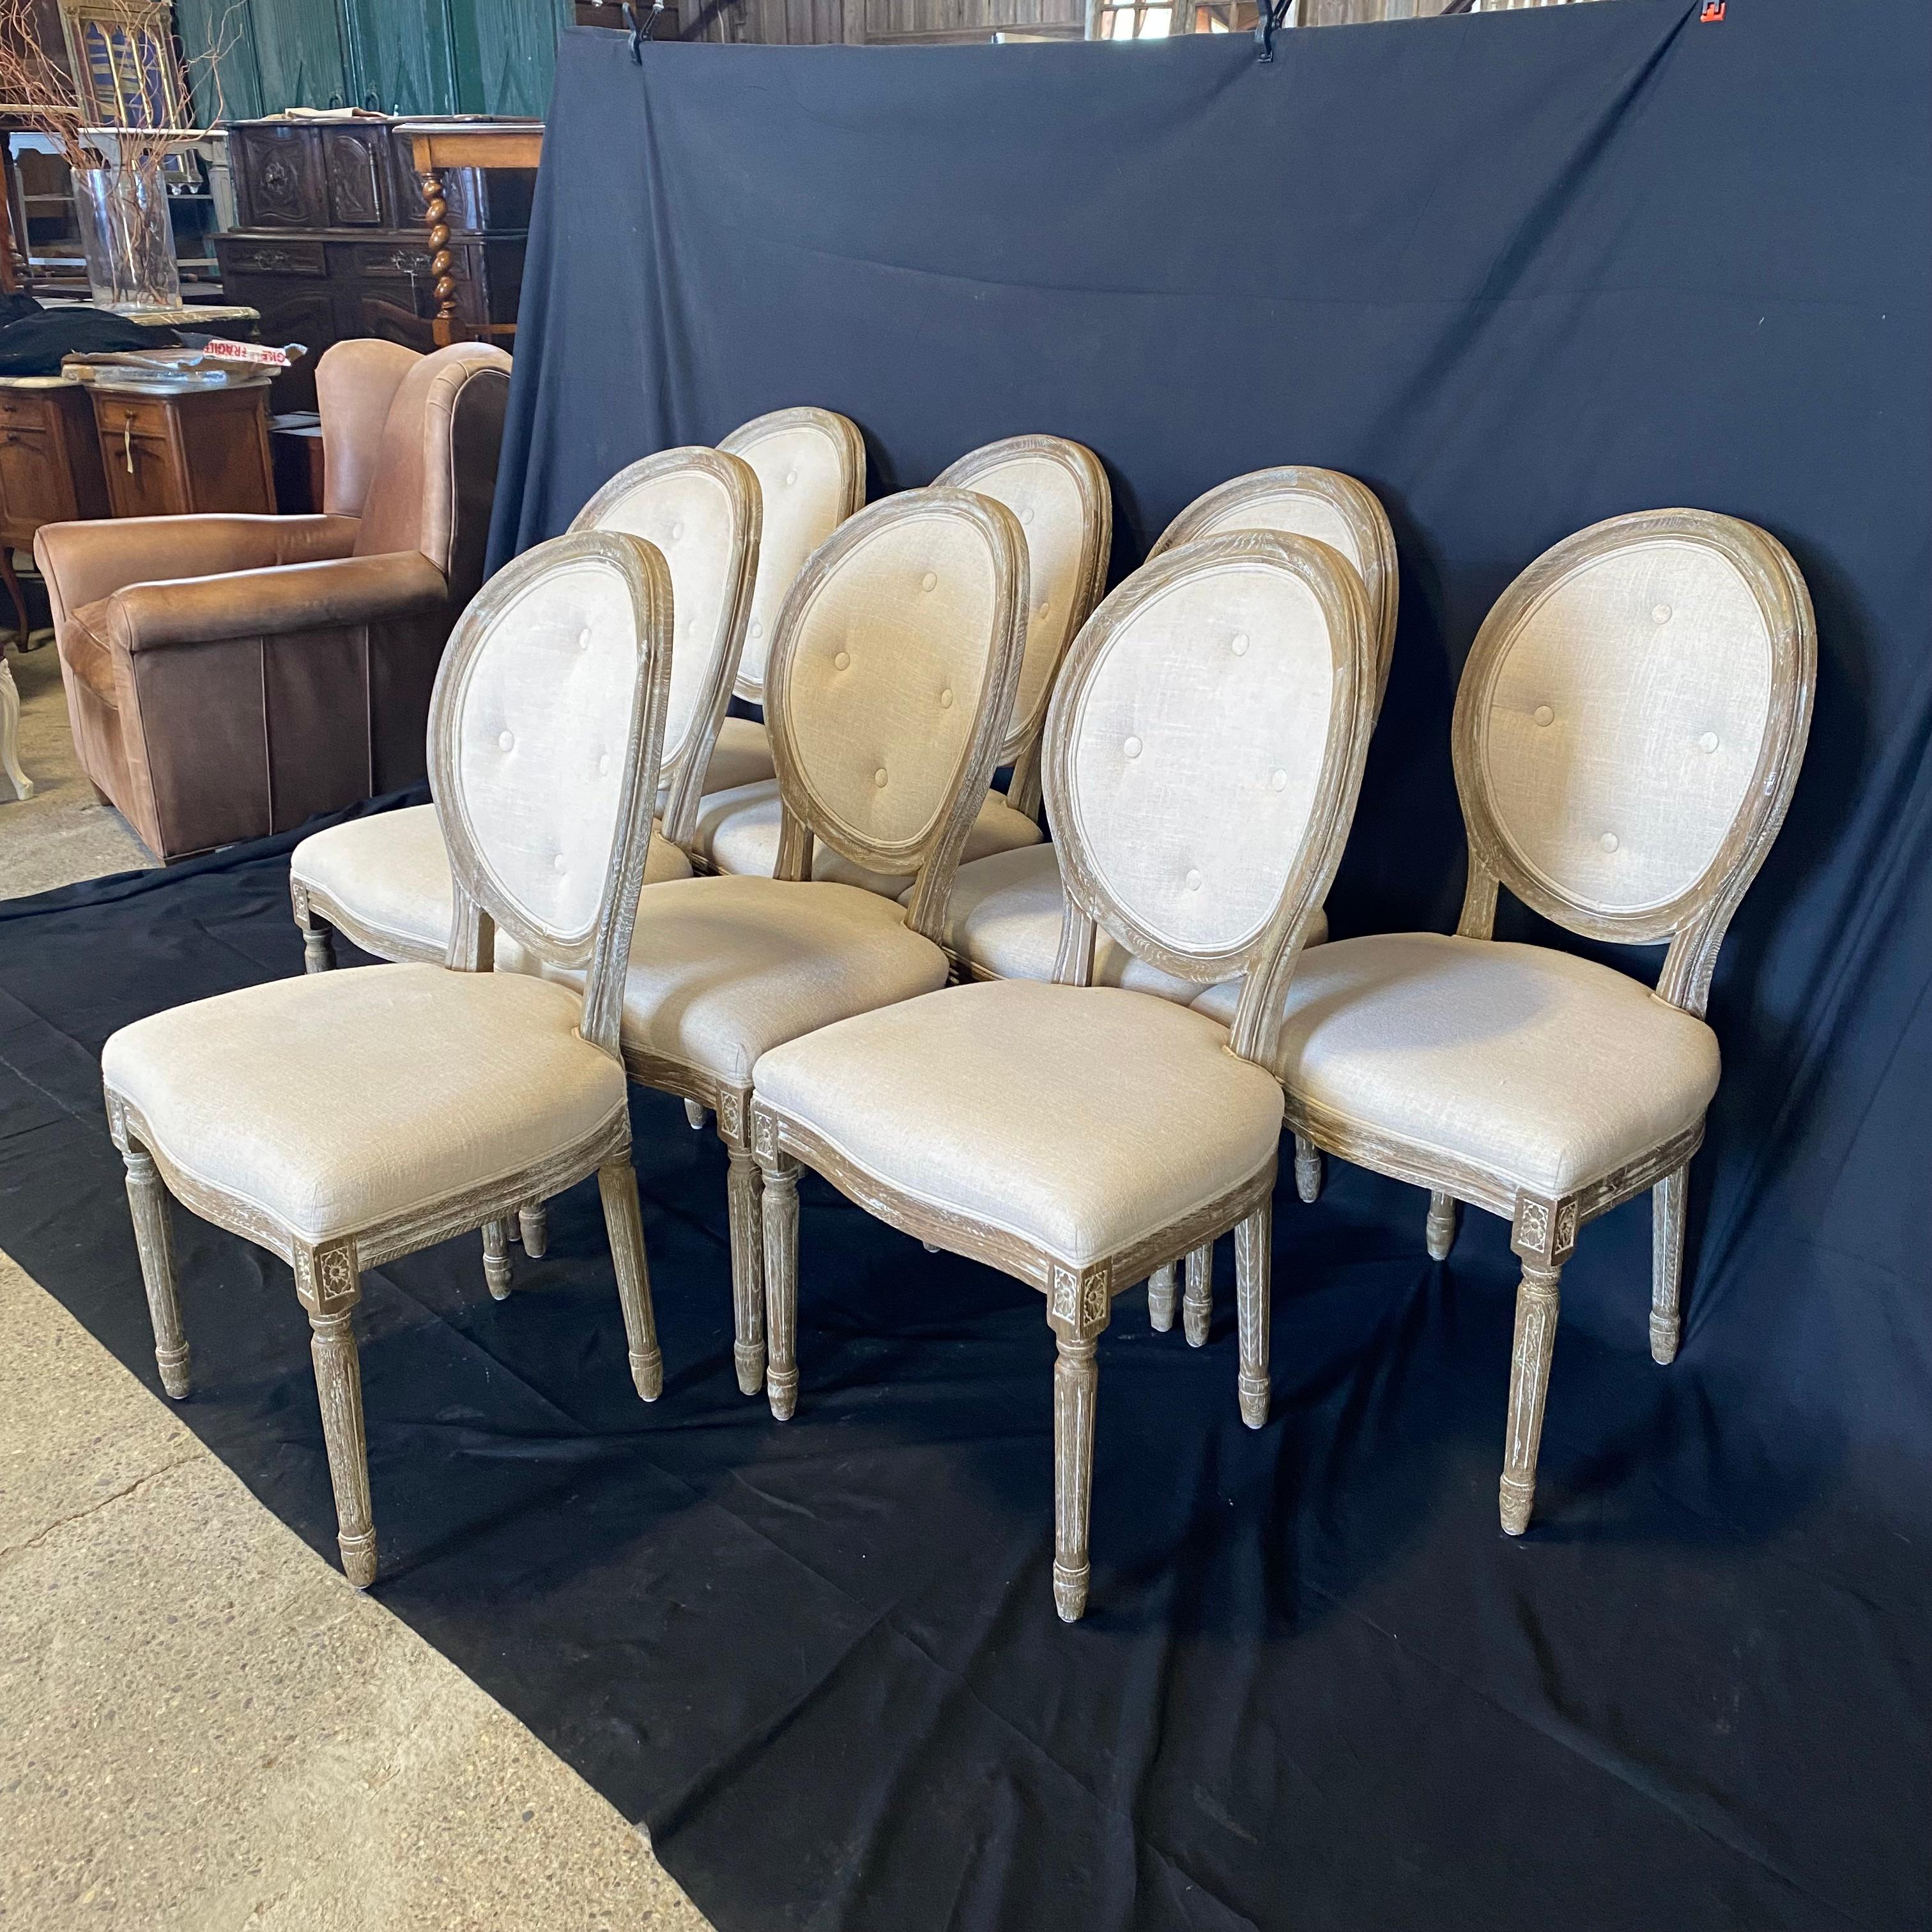 Très bel ensemble de huit chaises de salle à manger avec dossier touffeté et chêne cérusé dans le style classique de Louis XVI.  En excellent état et prêt à ajouter de l'élégance à votre salle à manger !
#5317